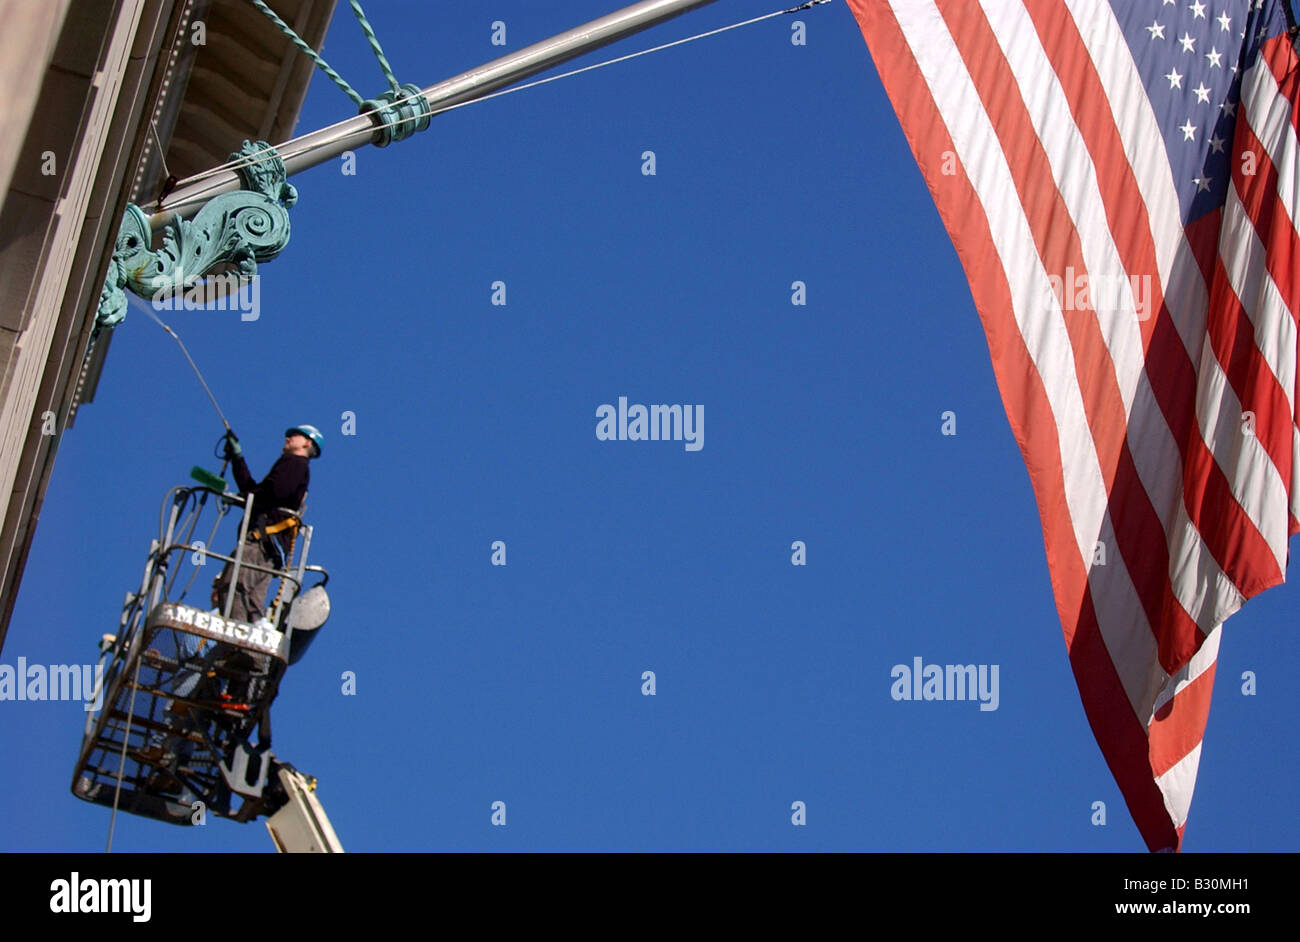 Un homme se lave vitres en hauteur sur un bâtiment comme un gigantesque drapeau américain se bloque contre un ciel bleu. Banque D'Images